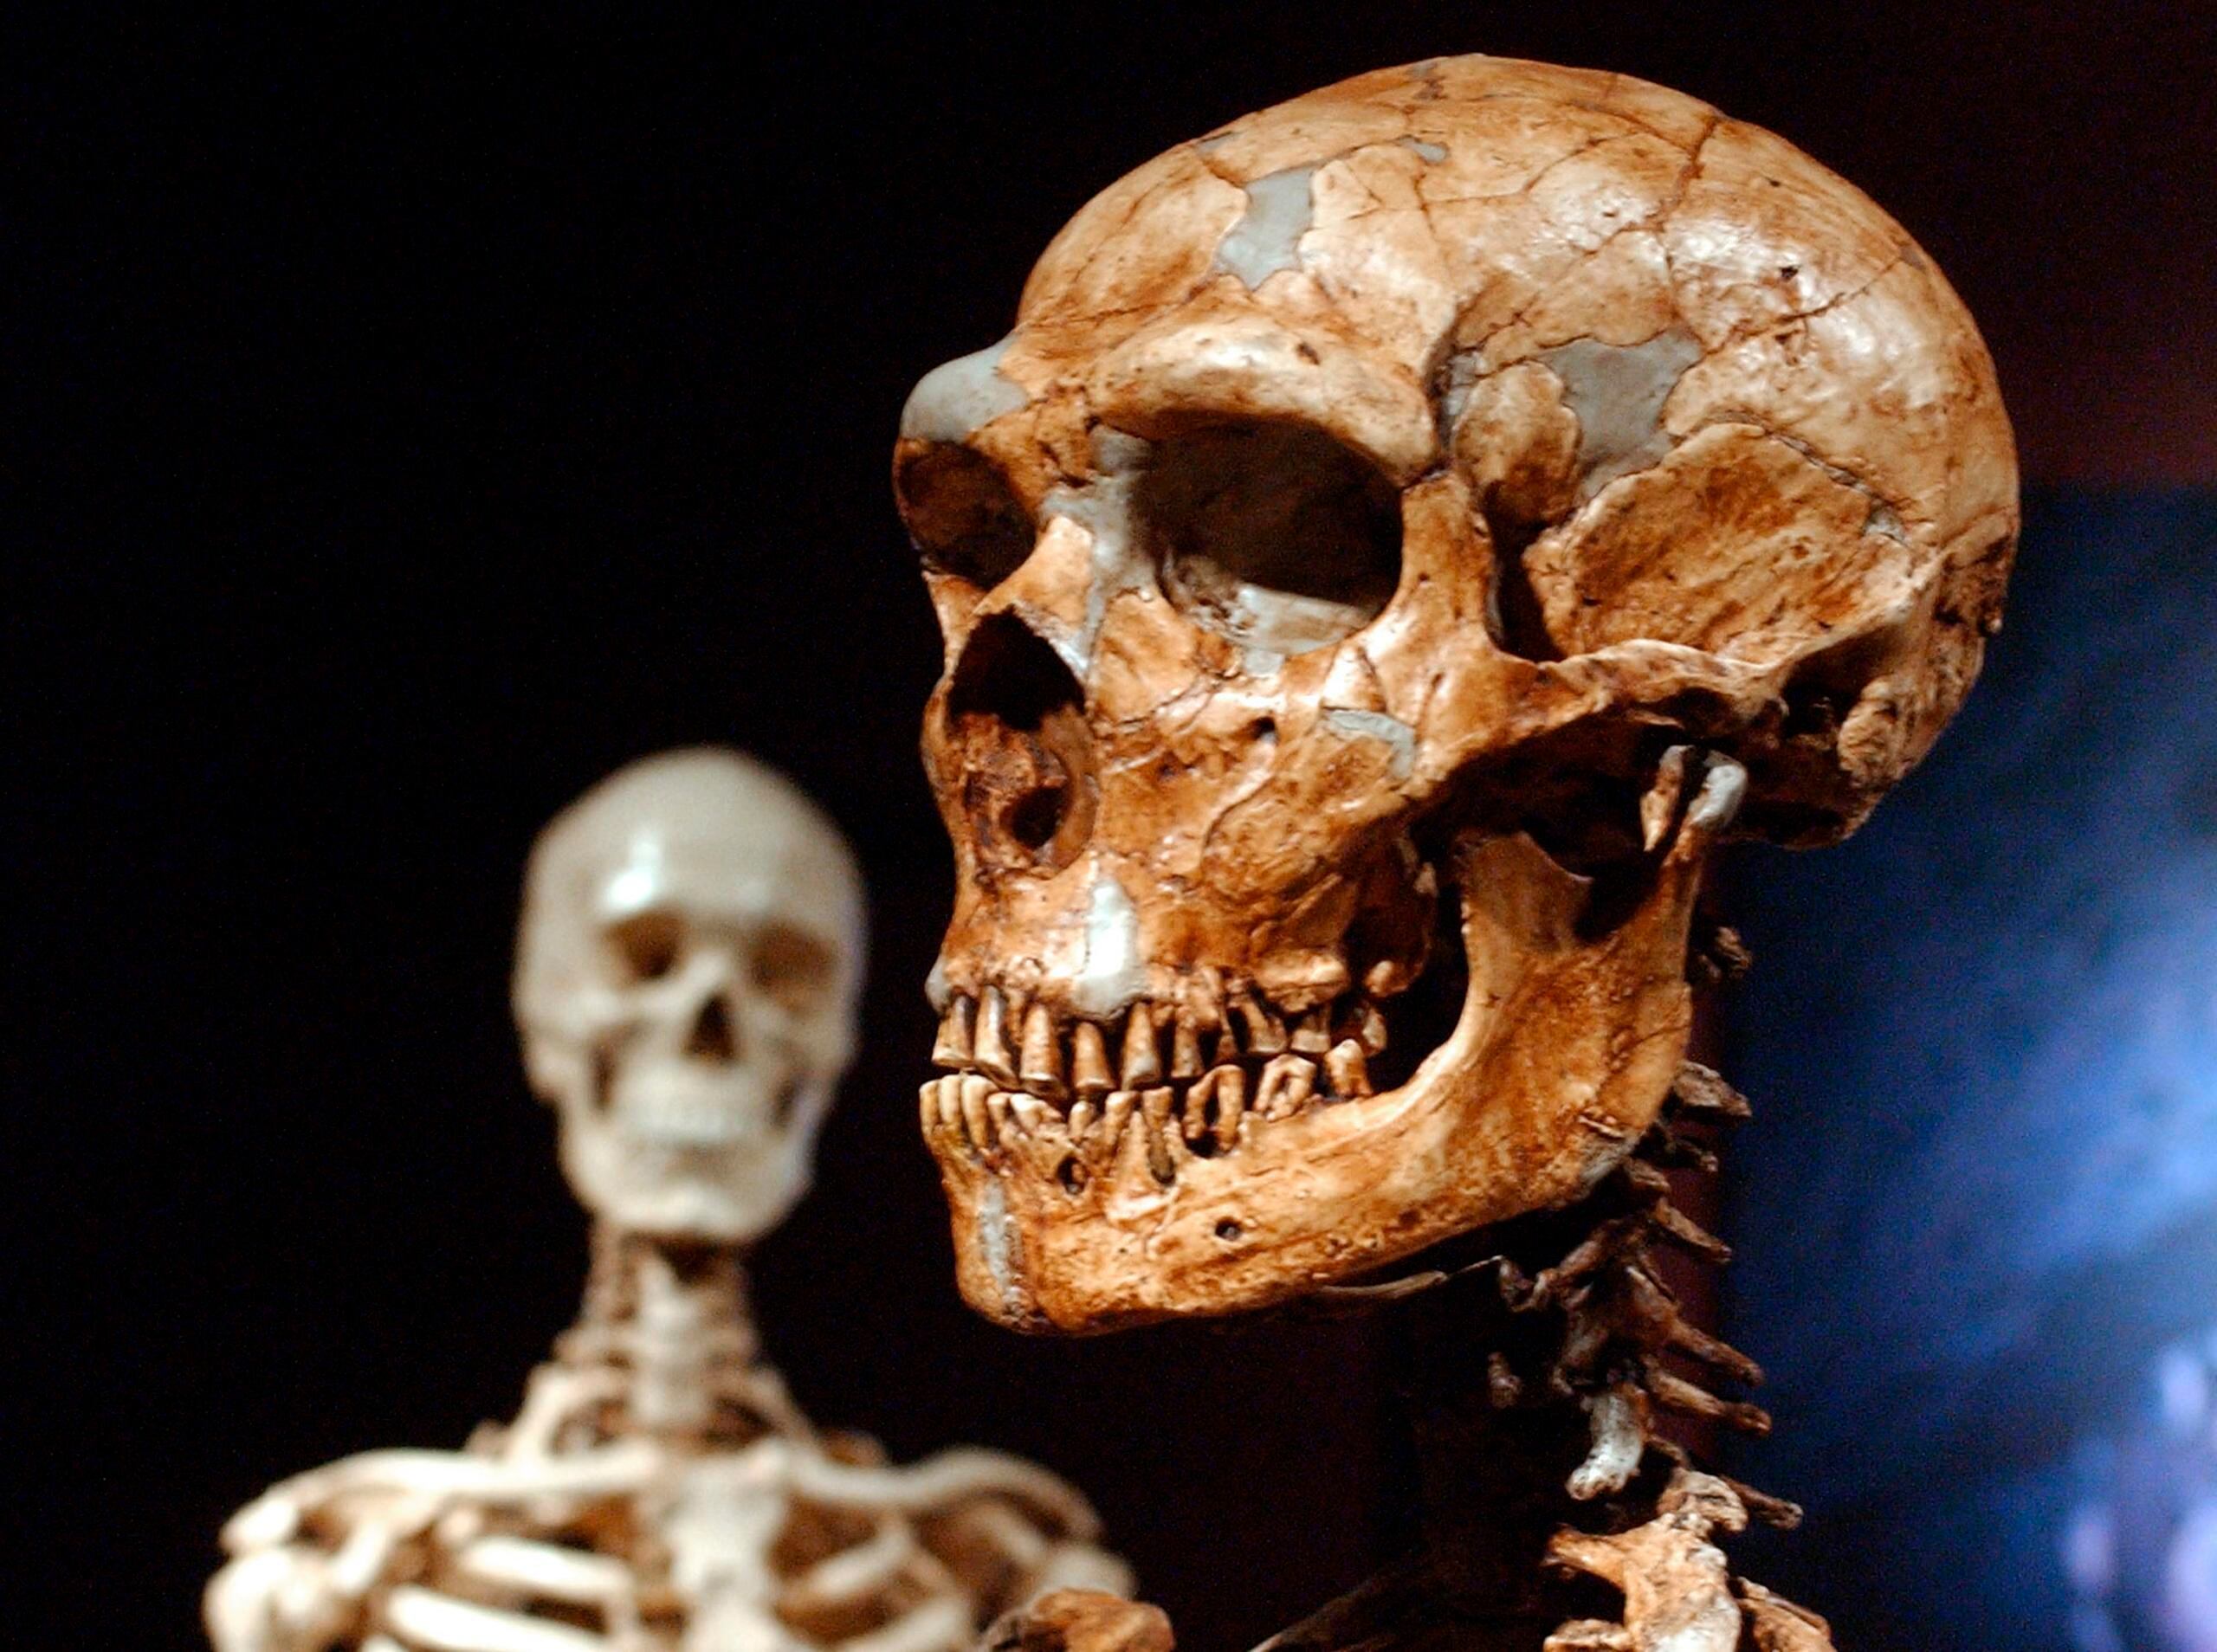 Un esqueleto reconstruido de neandertal y un esqueleto humano moderno en exhibición en el Museo de Historia Natural en Nueva York.